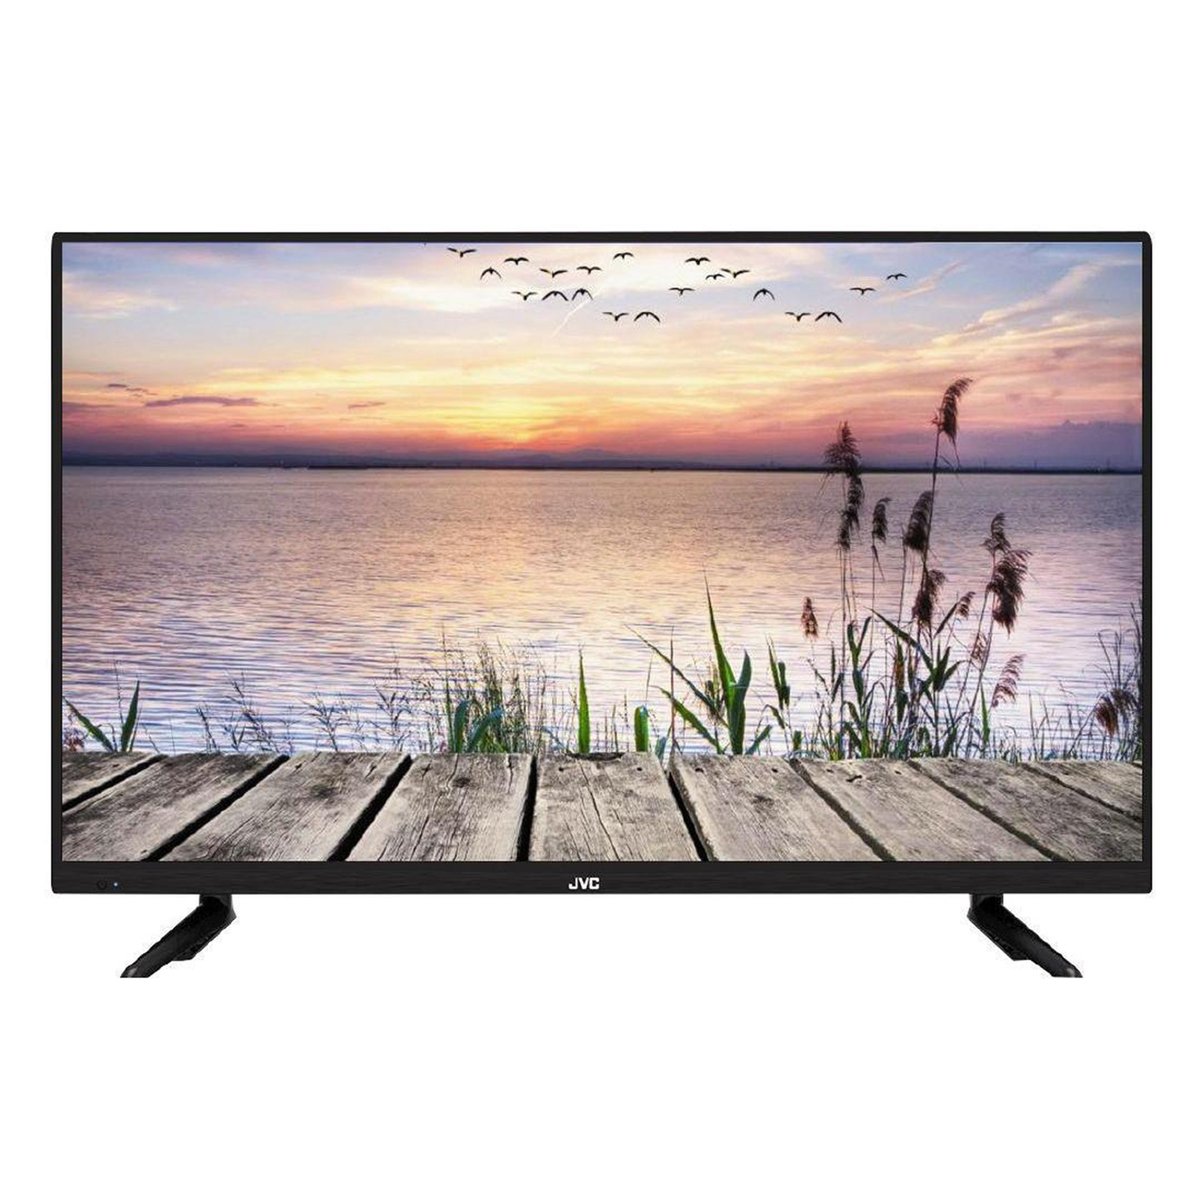 JVC Ultra HD Smart LED TV LT50N795 50"